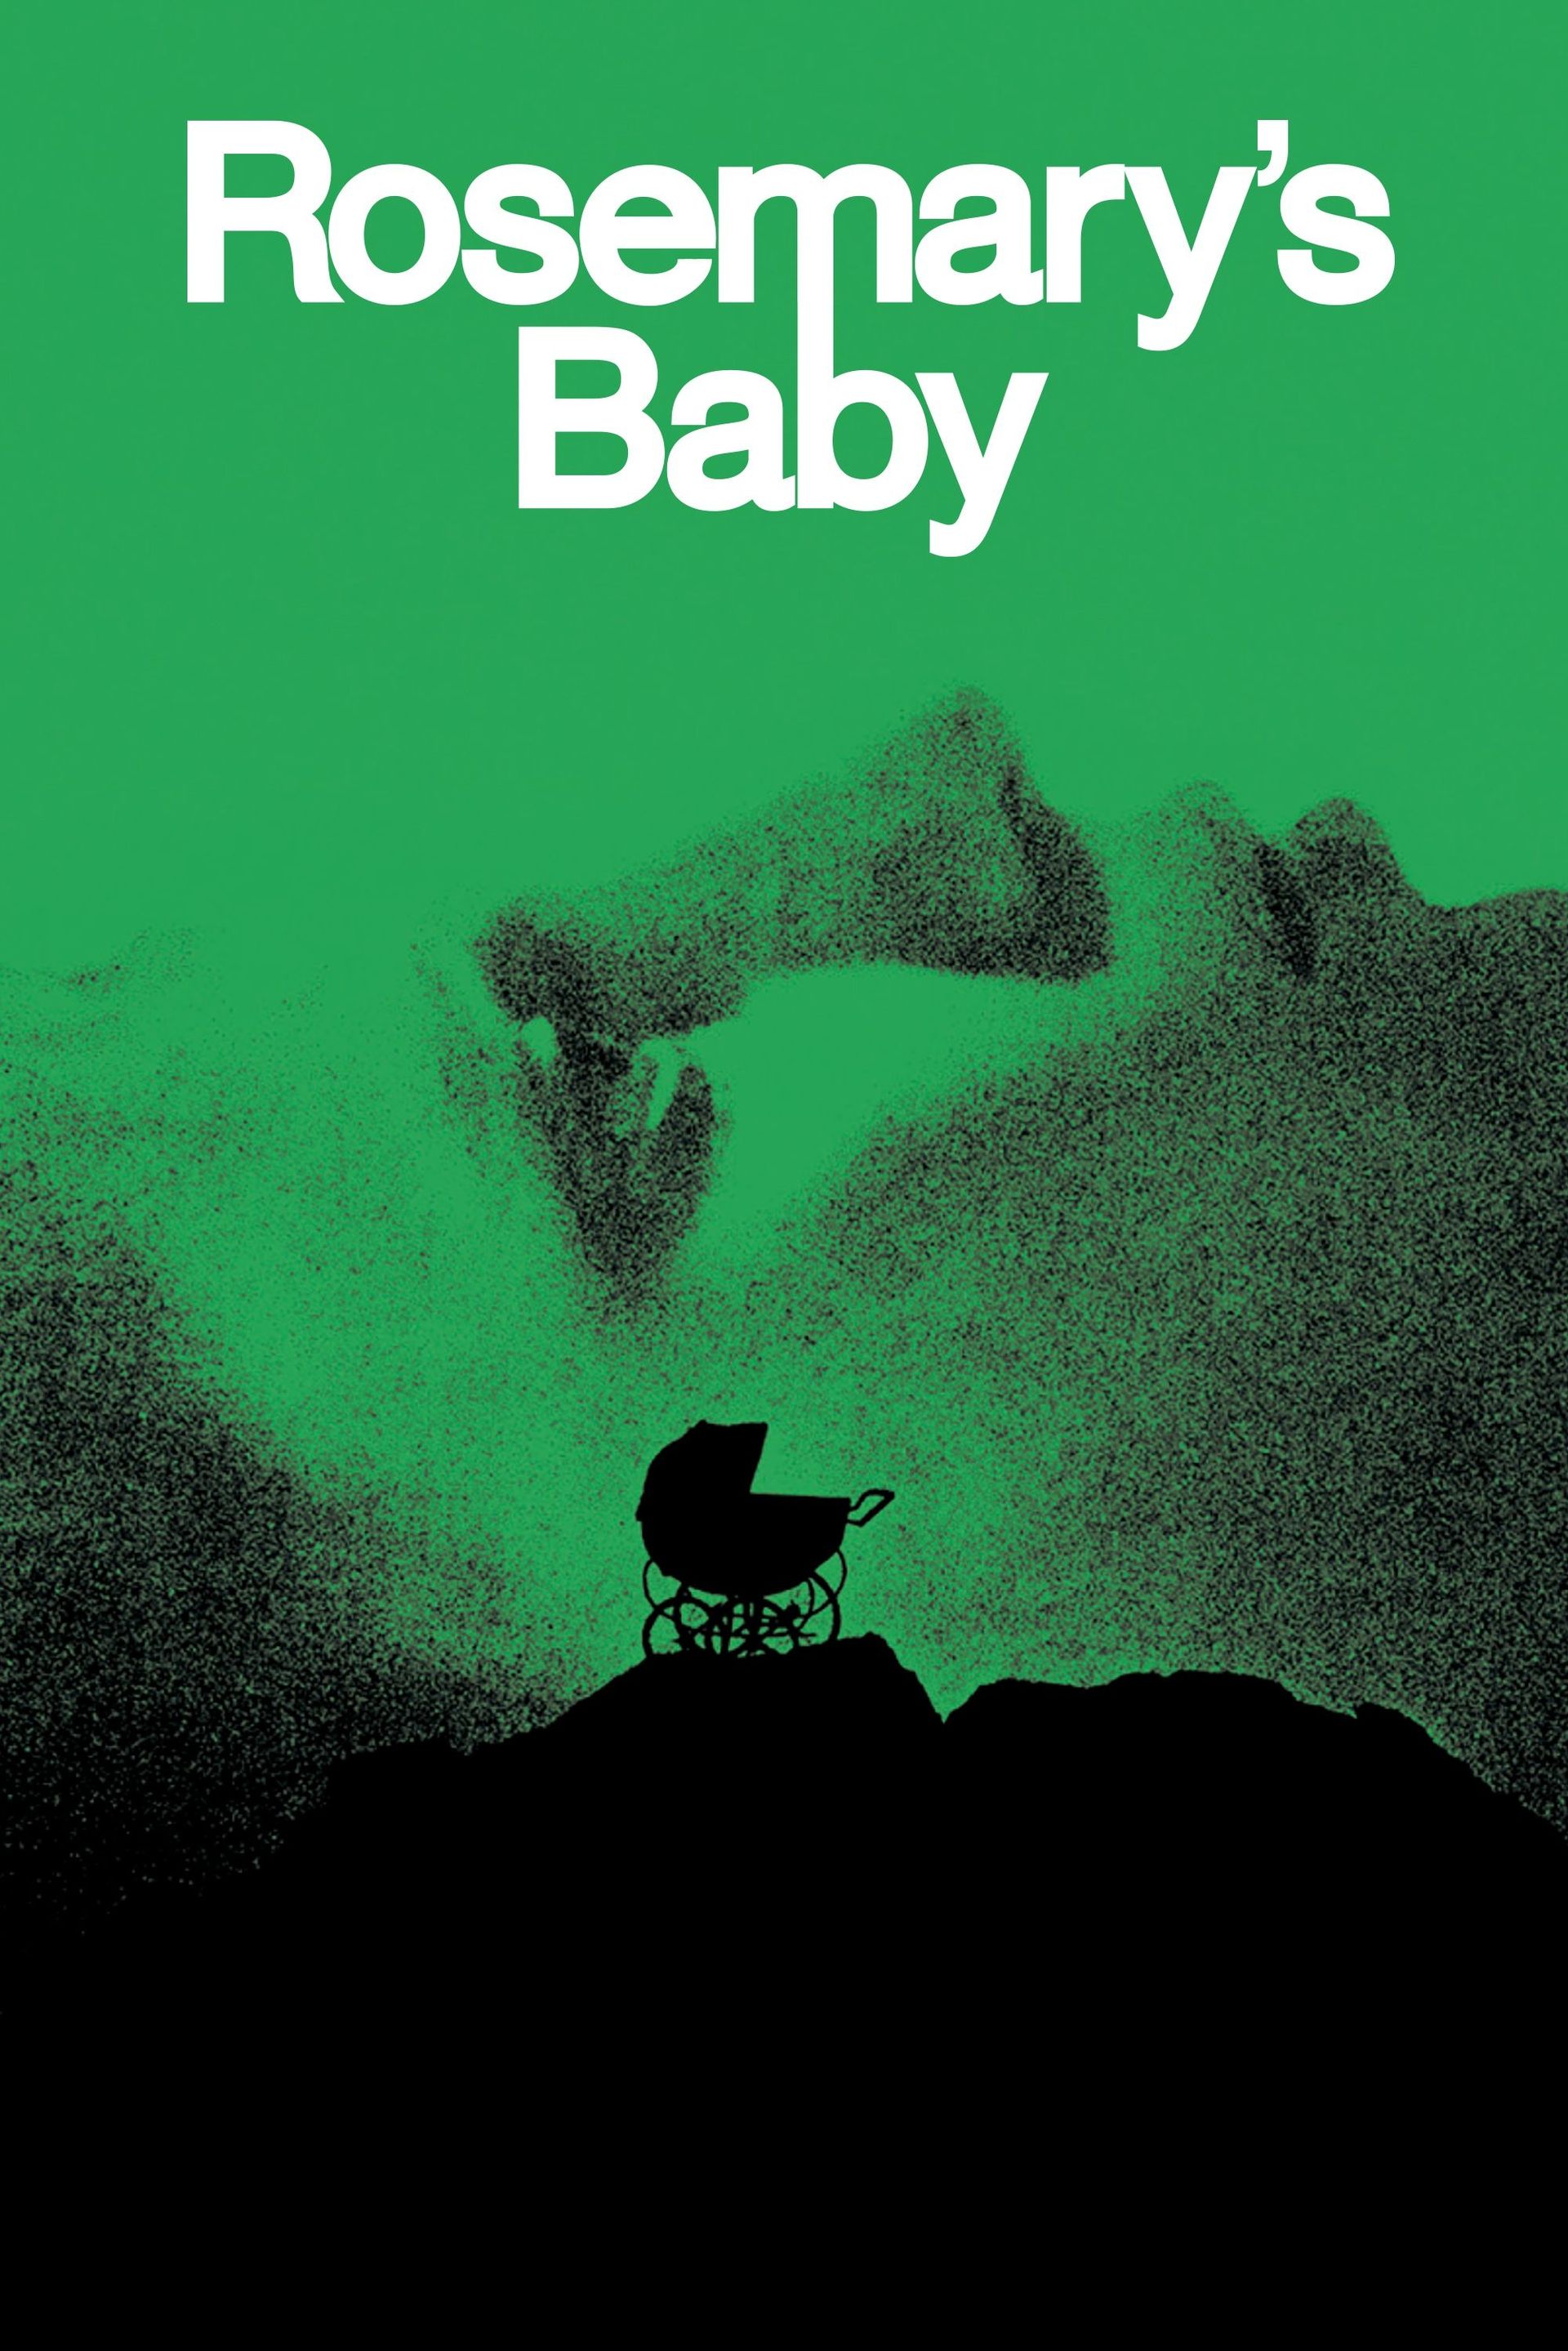 Affiche du film "Rosemary's Baby" de Roman Polanski